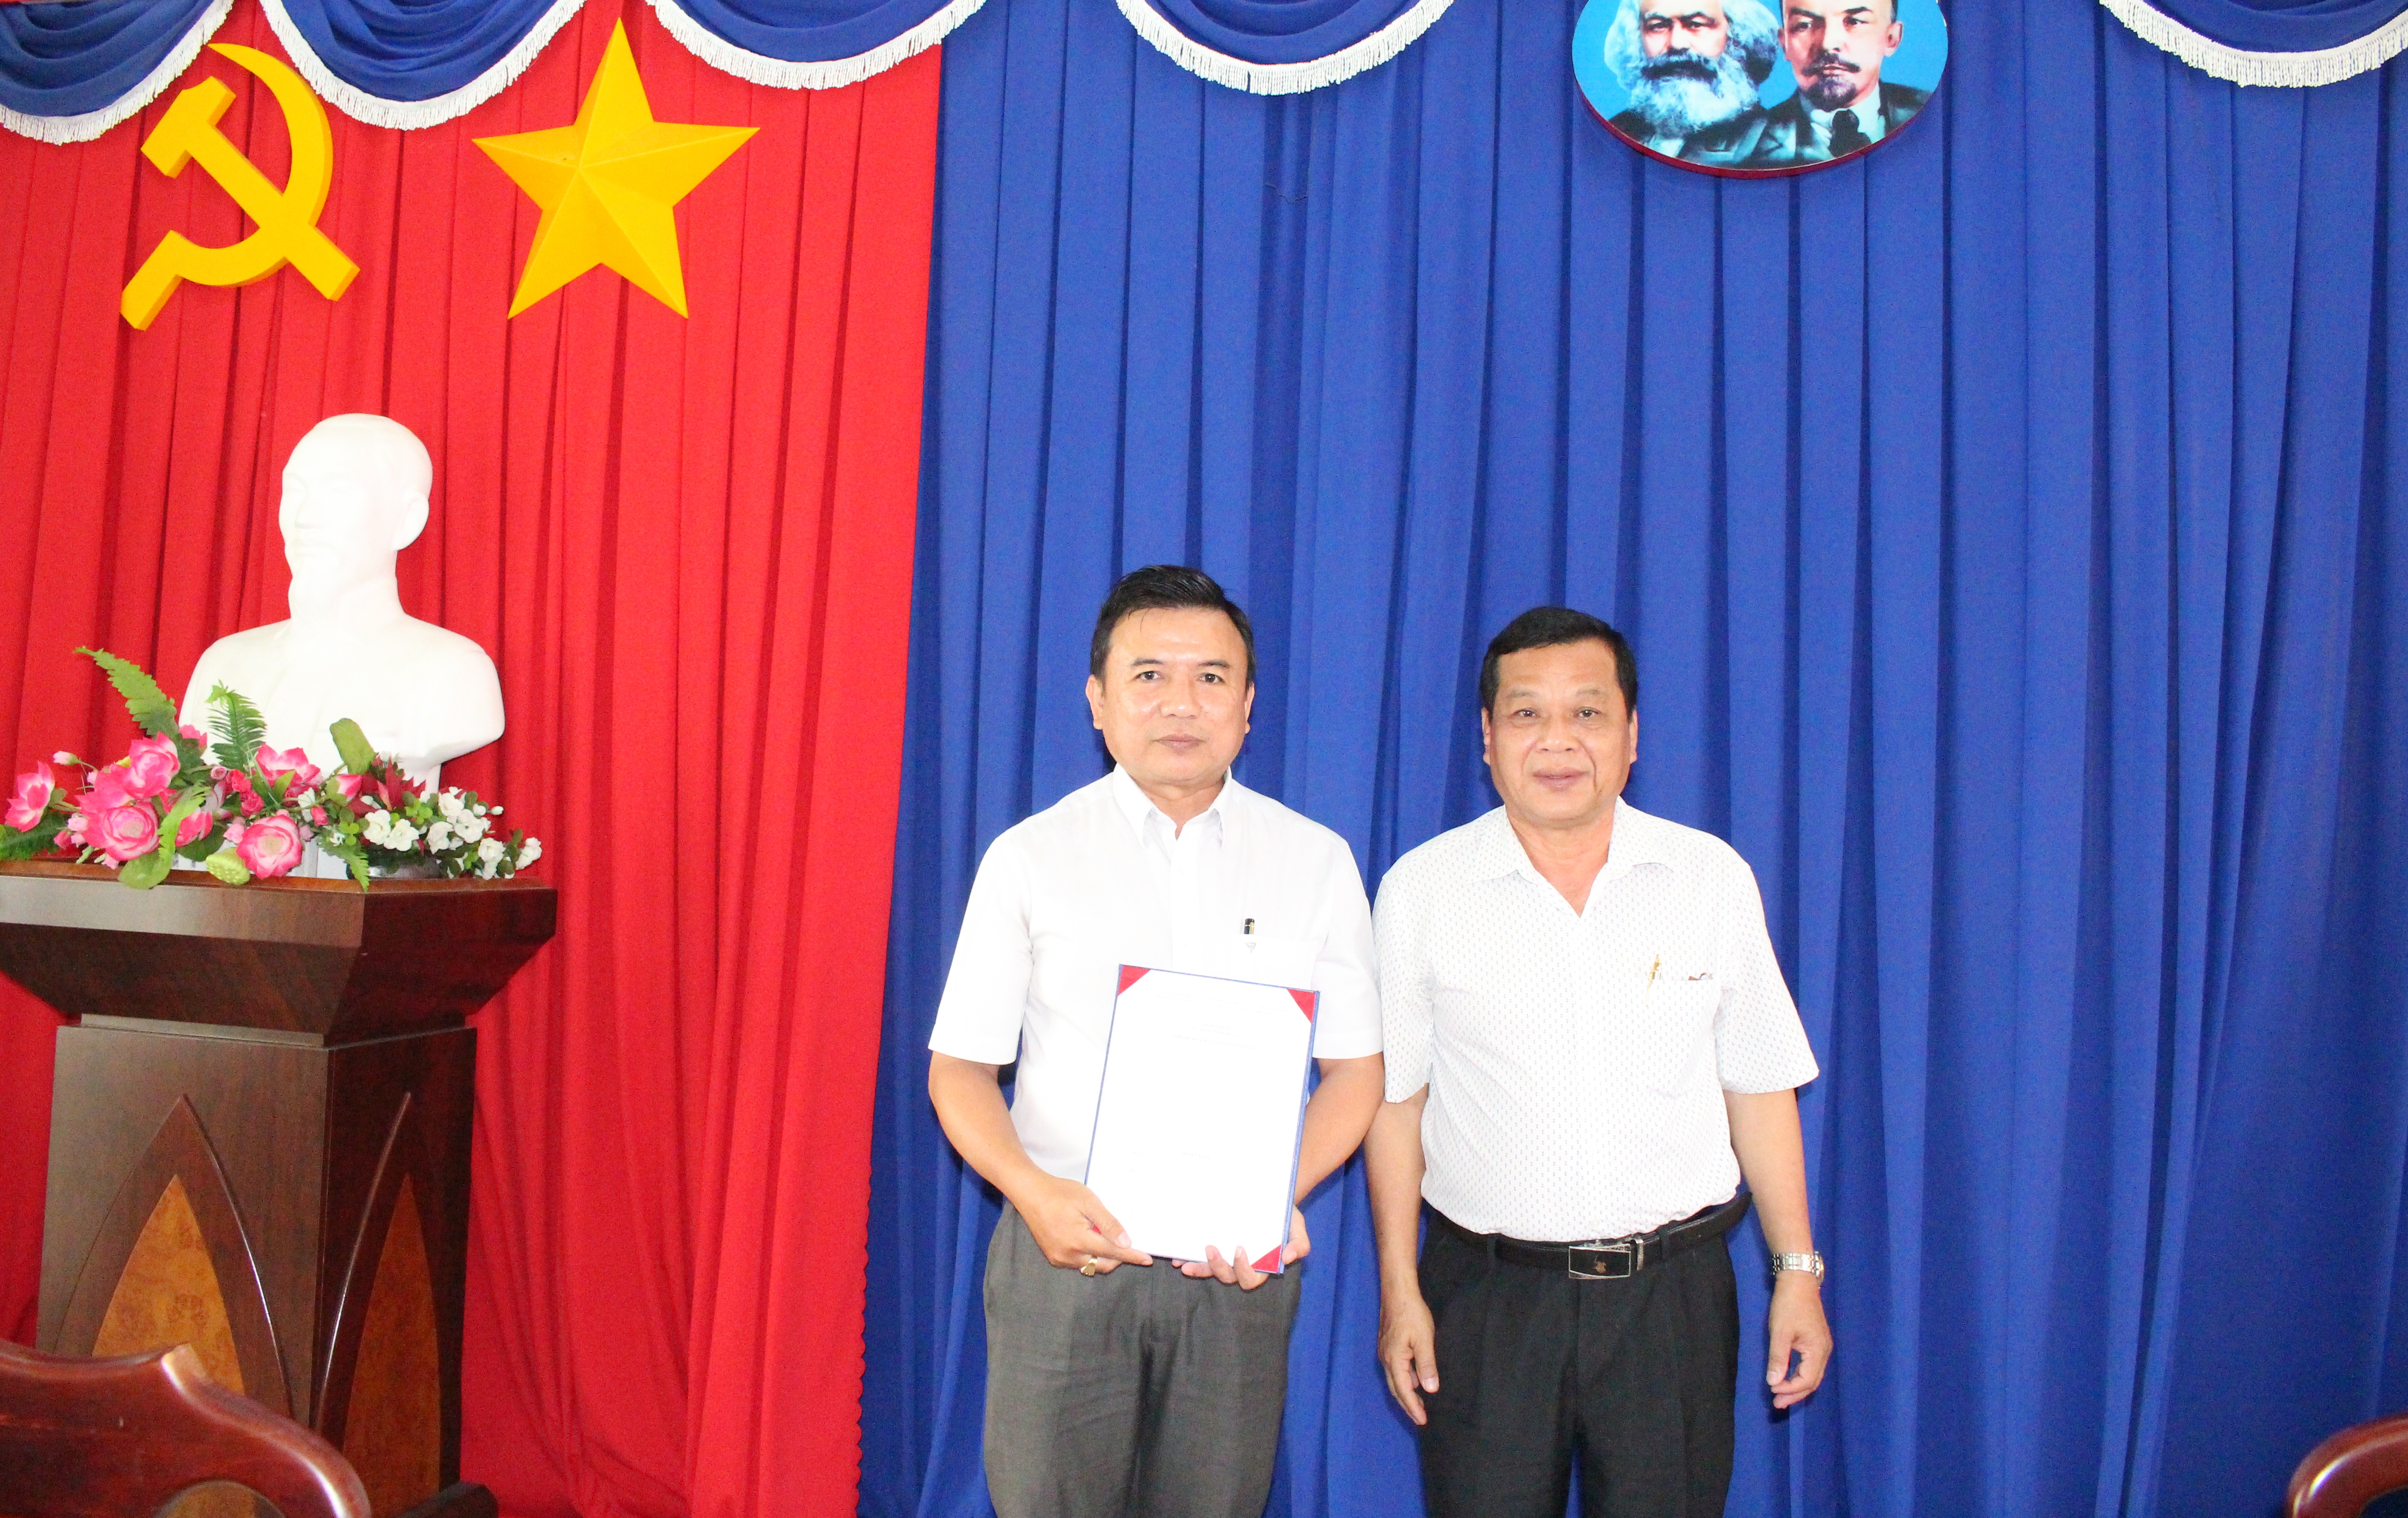 ông Nguyễn Văn Thương - Phó Chủ tịch UBND huyện thay mặt Chủ tịch UBND huyện trao Quyết định bổ nhiệm cho ông Phạm Toàn Thắng.